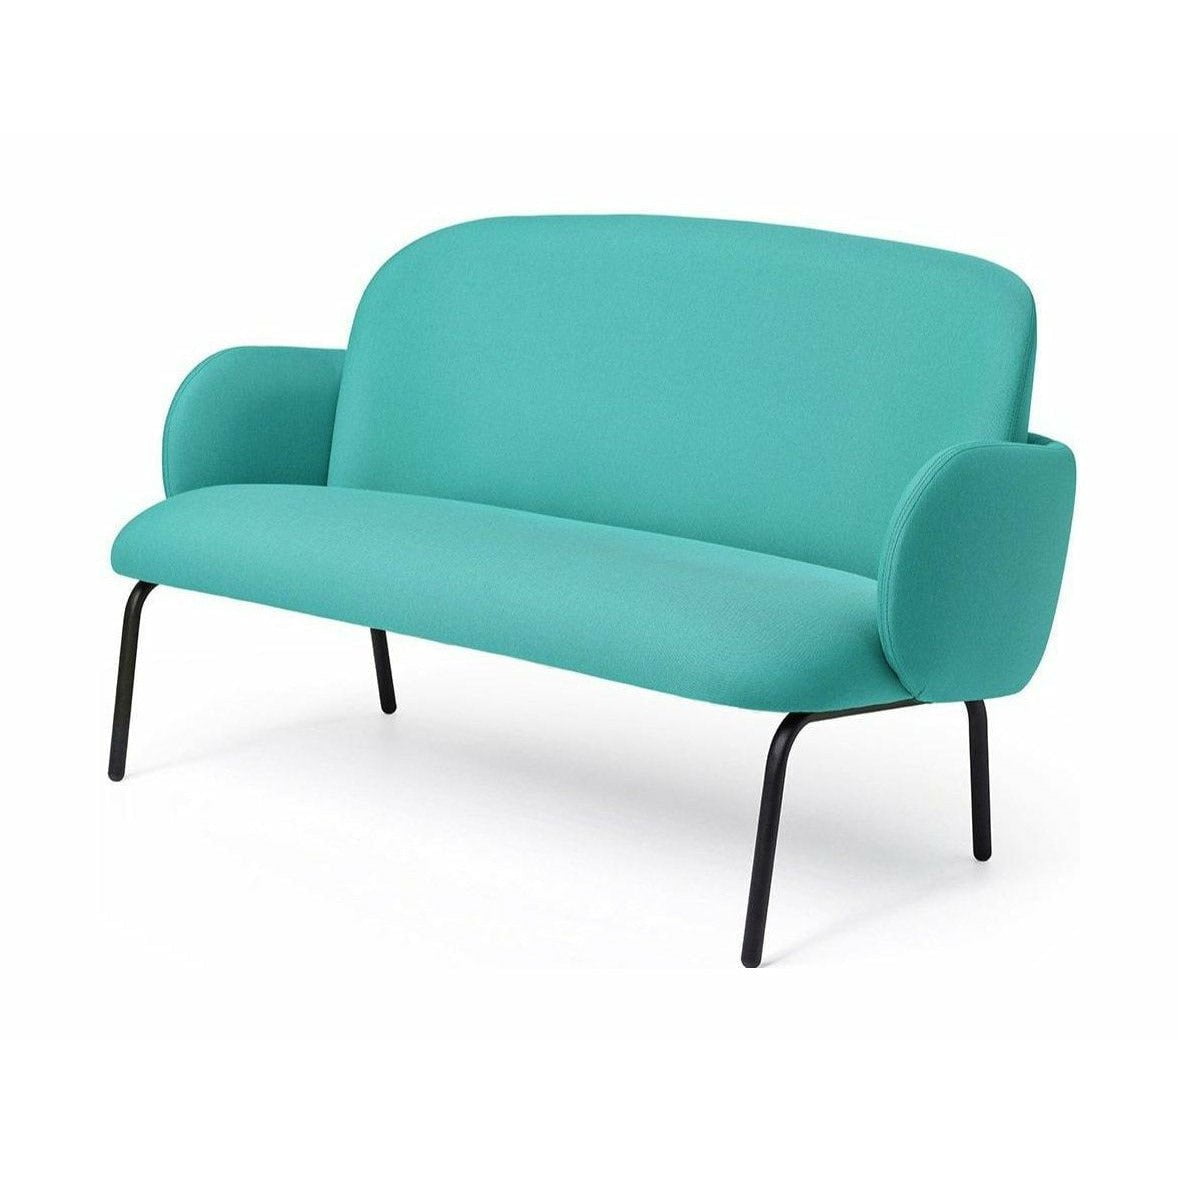 Acciaio di divano di Puik Dost, verde chiaro